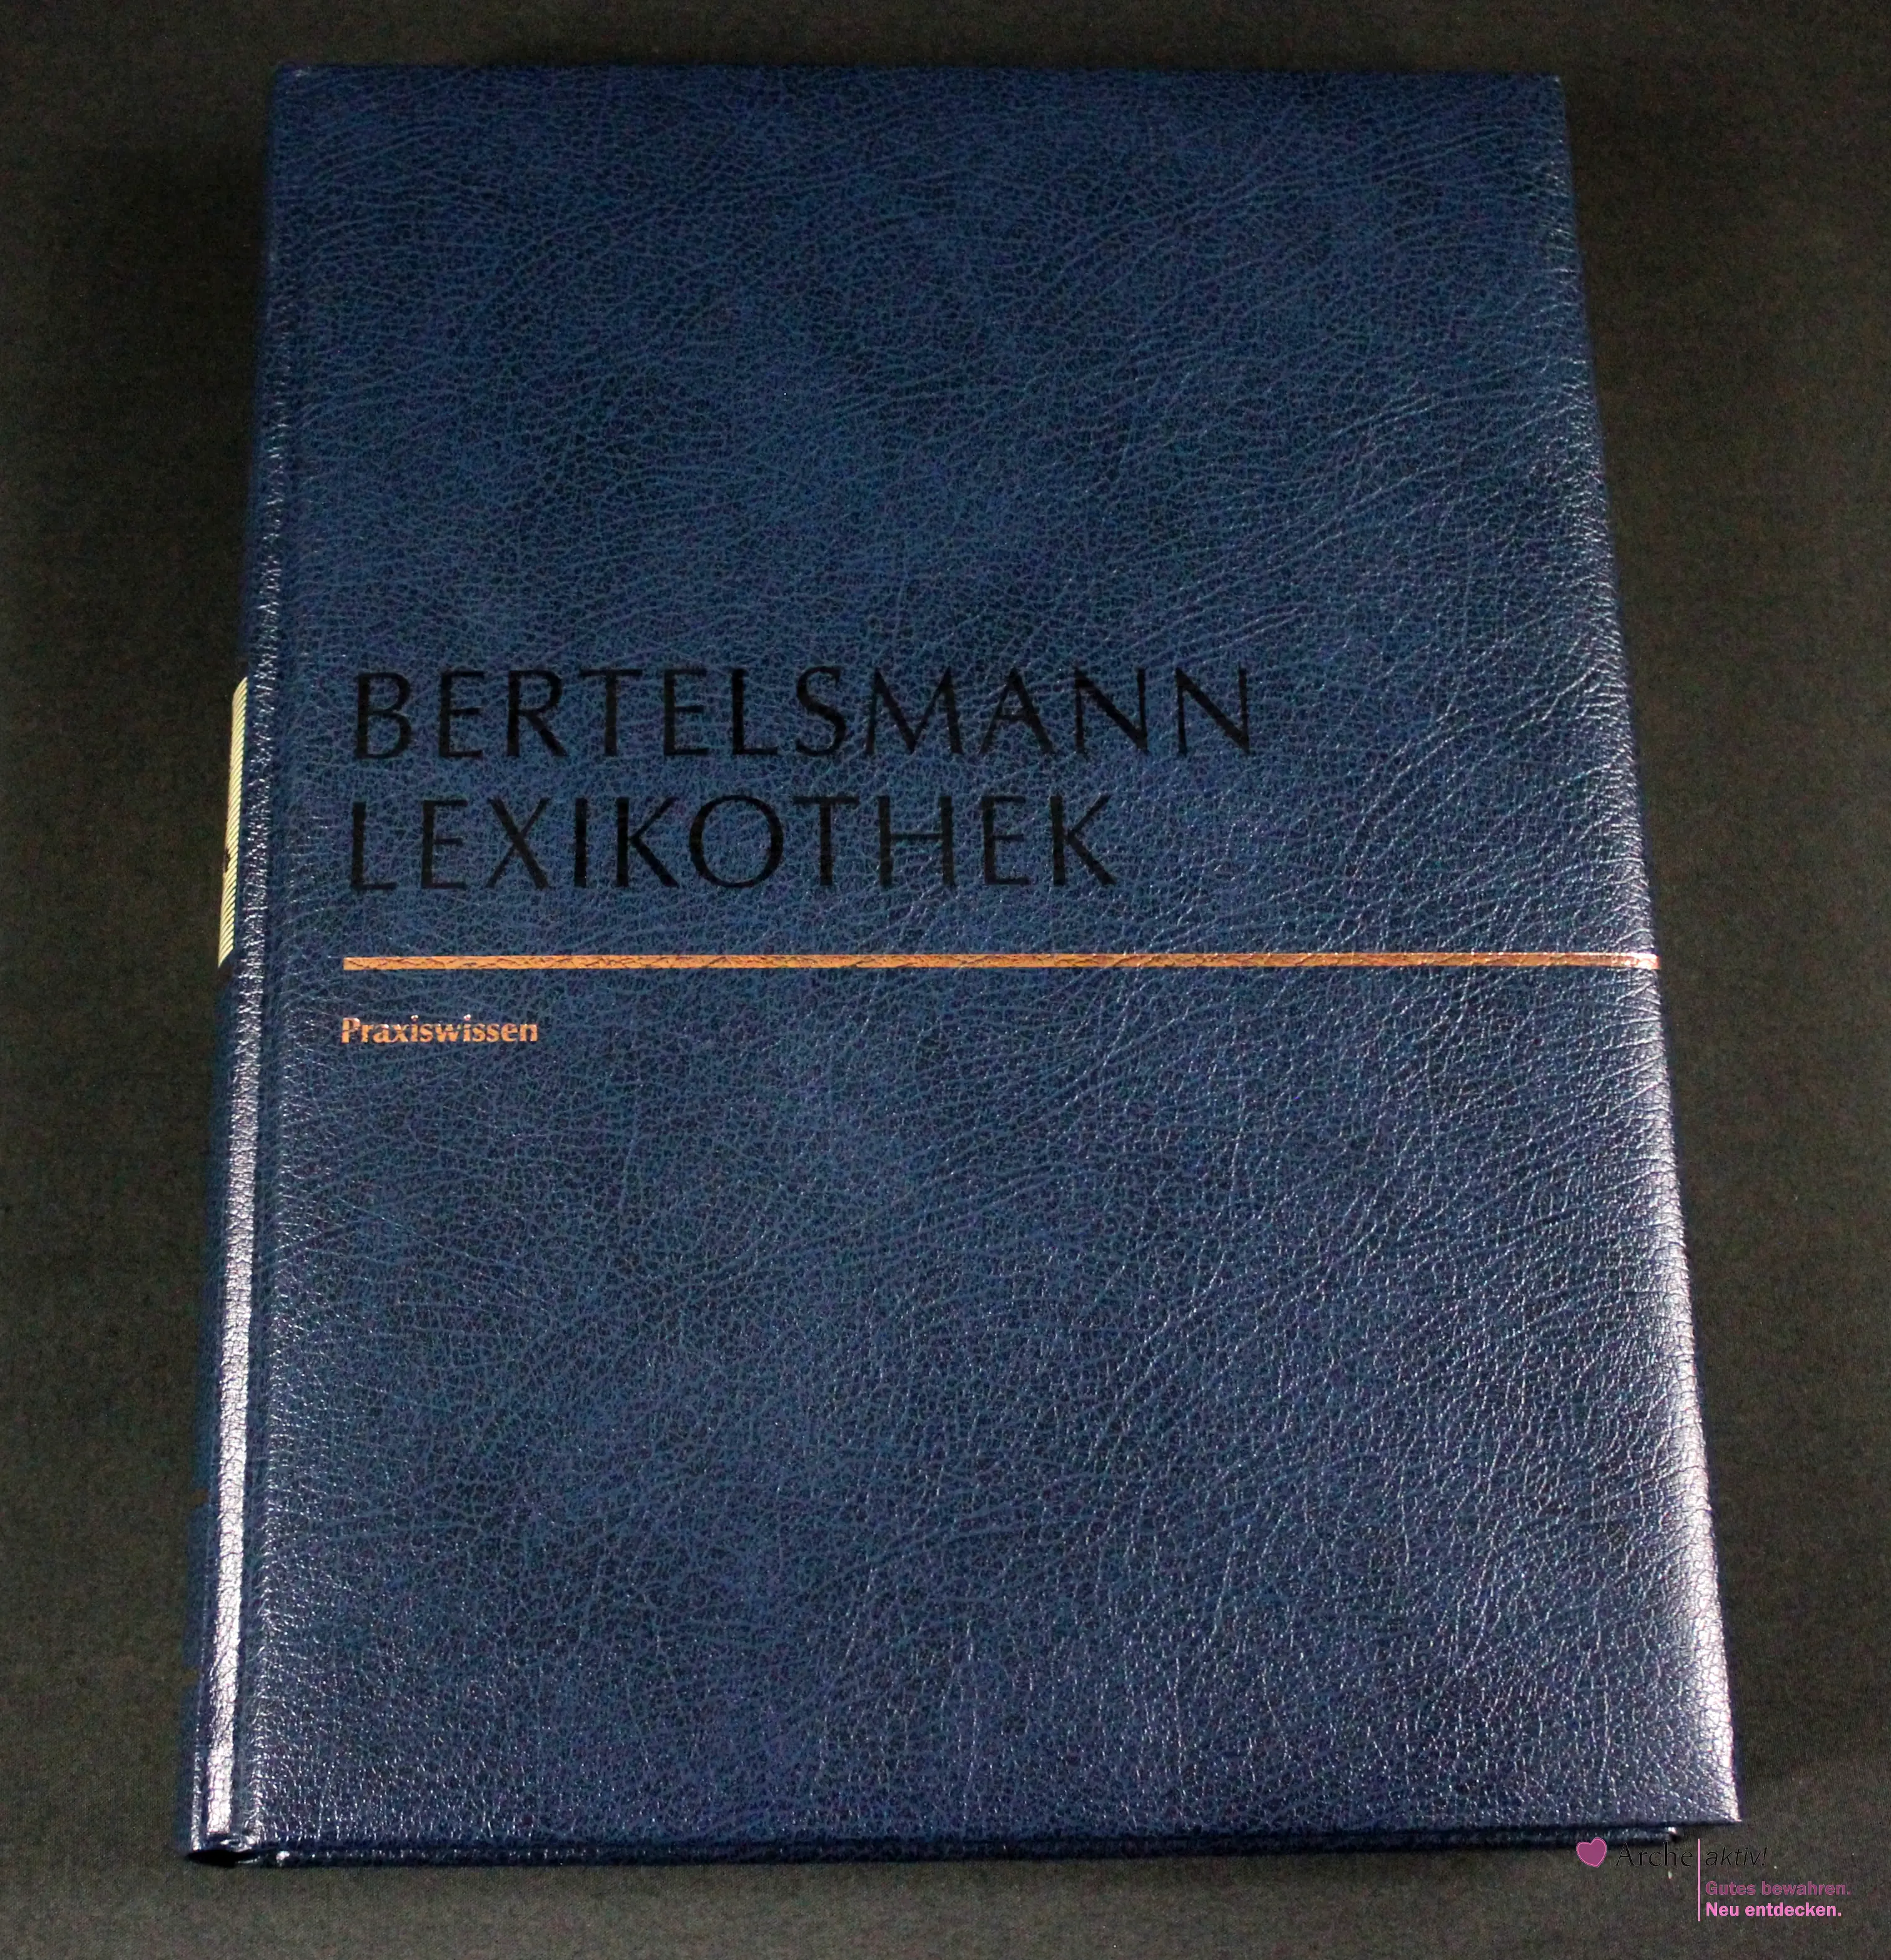 Bertelsmann Lexikothek - Praxiswissen - Recht, gebraucht